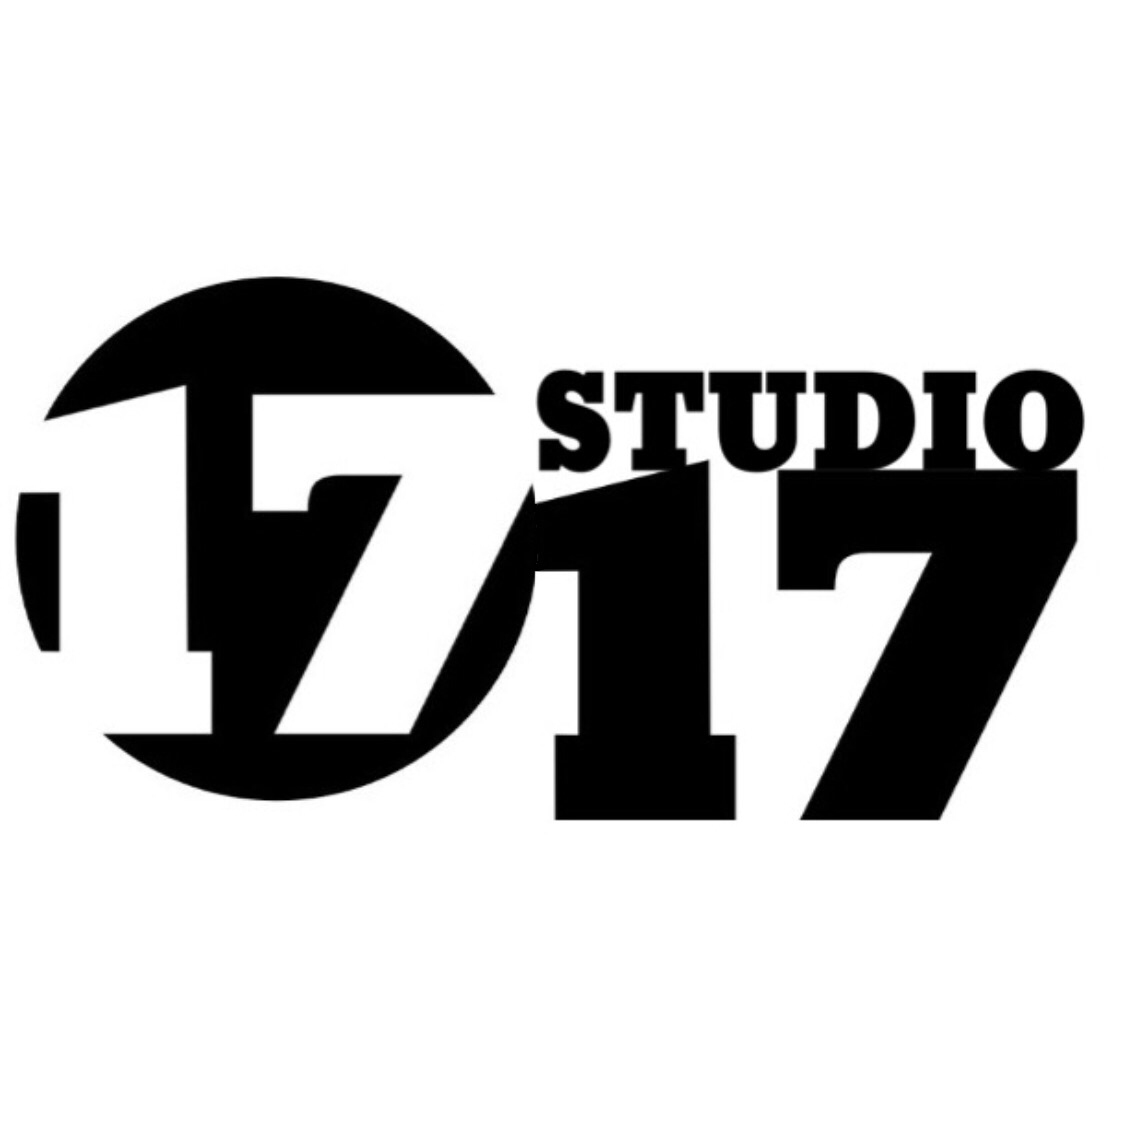 1717 STUDIO